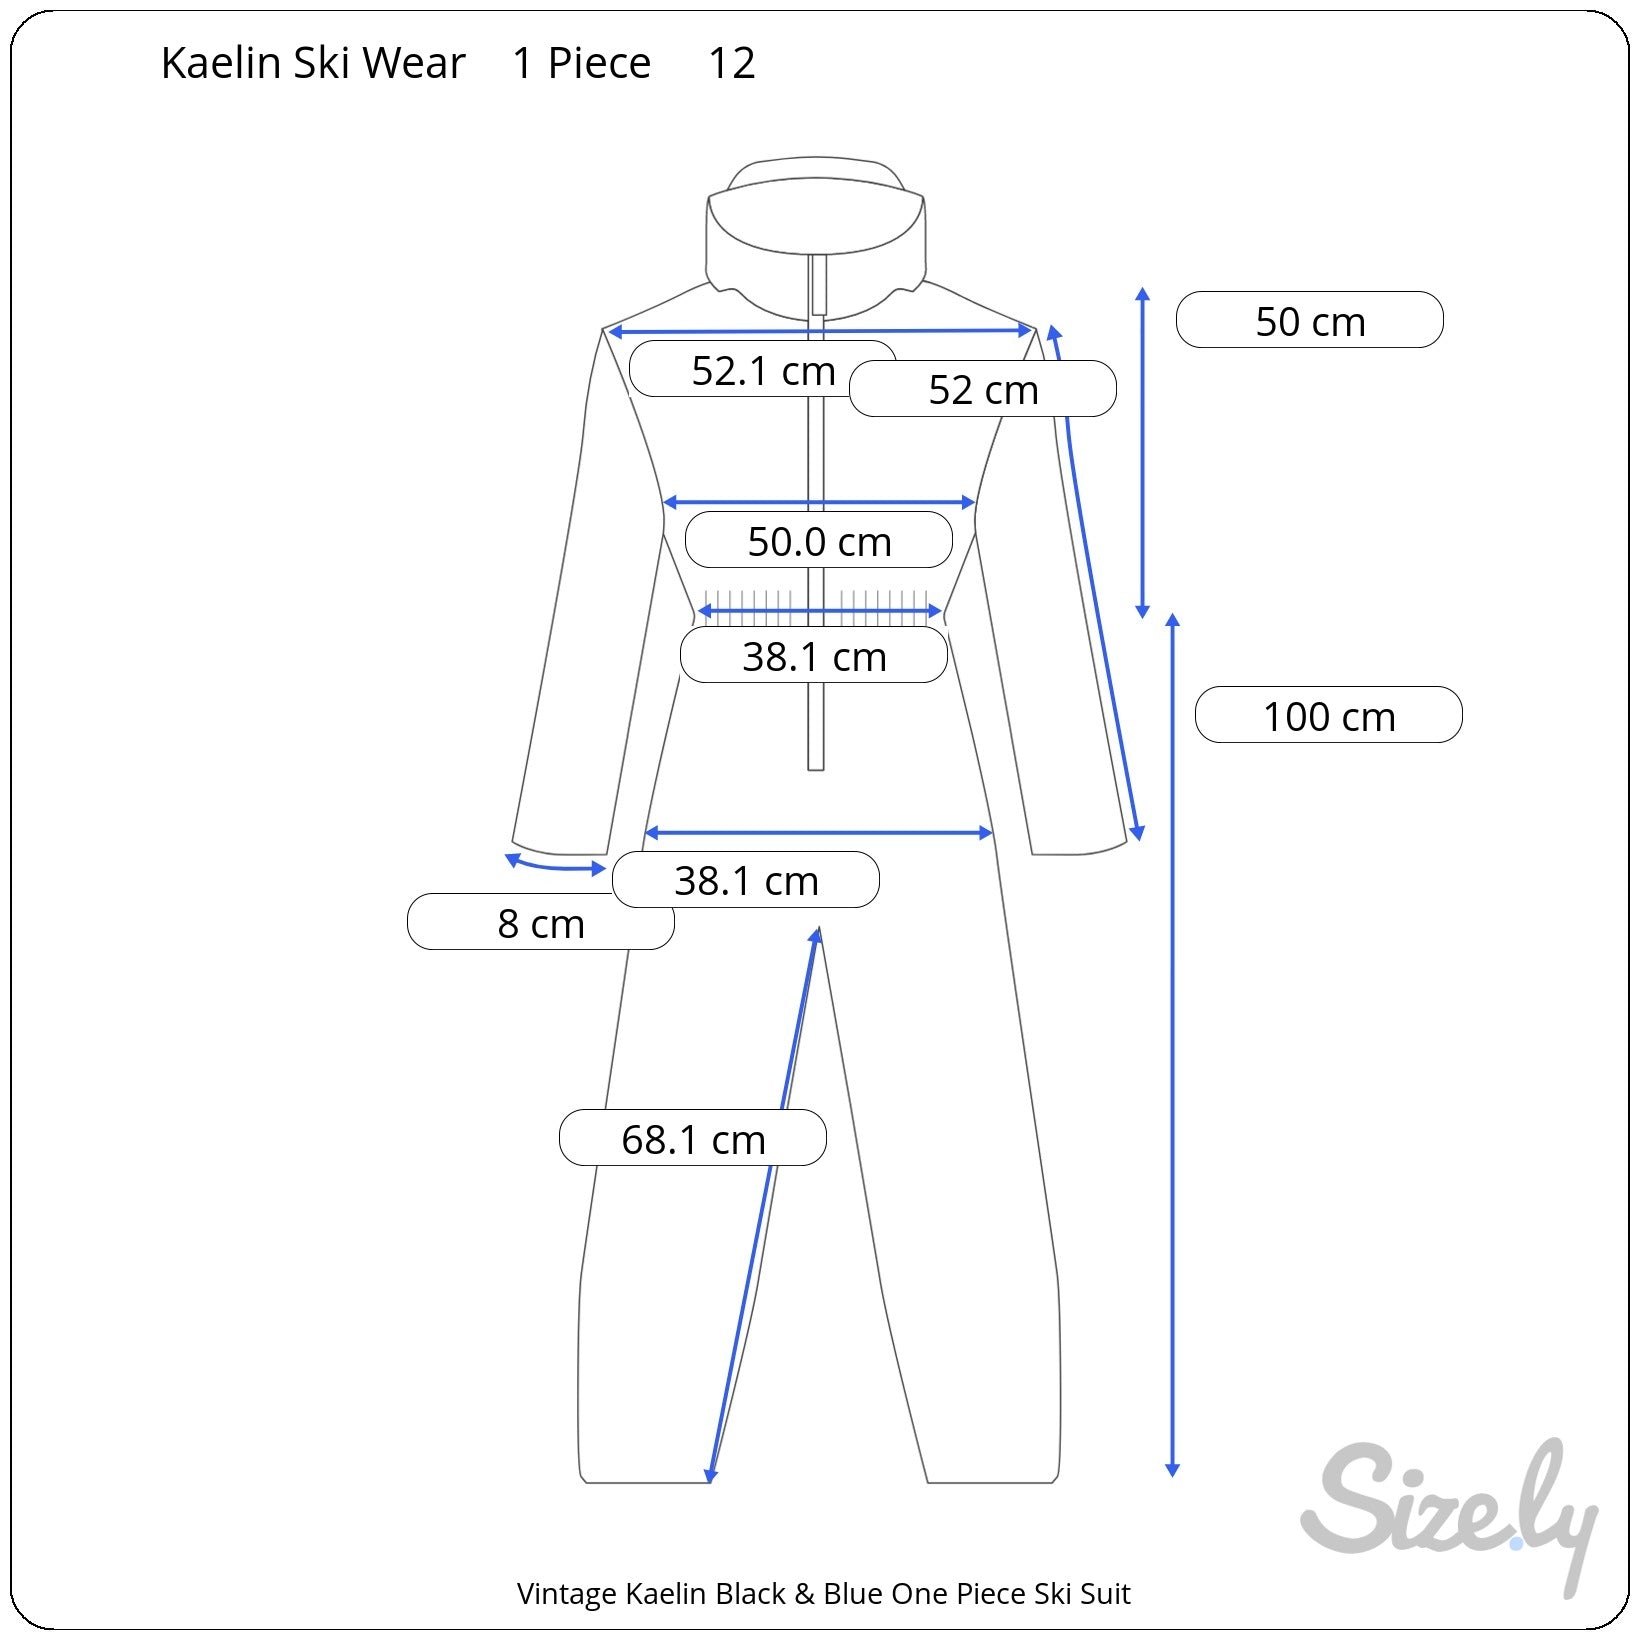 Vintage Kaelin Black & Blue One Piece Ski Suit Measurements